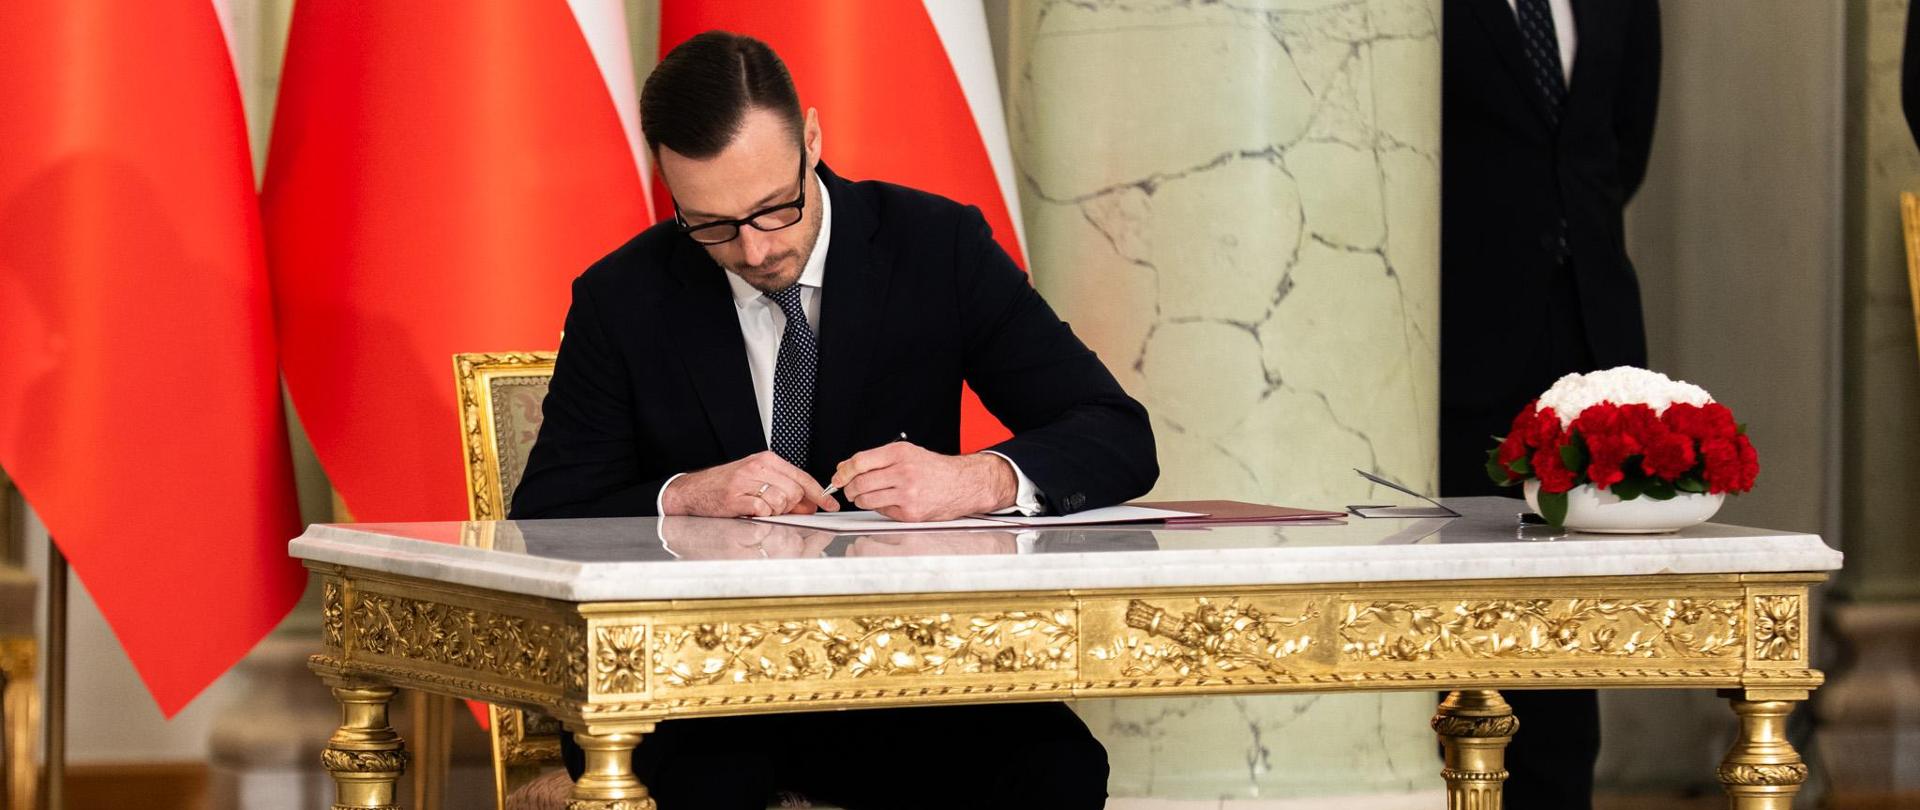 Zaprzysiężenie nowego Ministra Aktywów Państwowych Jakuba Jaworowskiego. Minister siedzi przy stole i podpisuje rotę przysięgi.